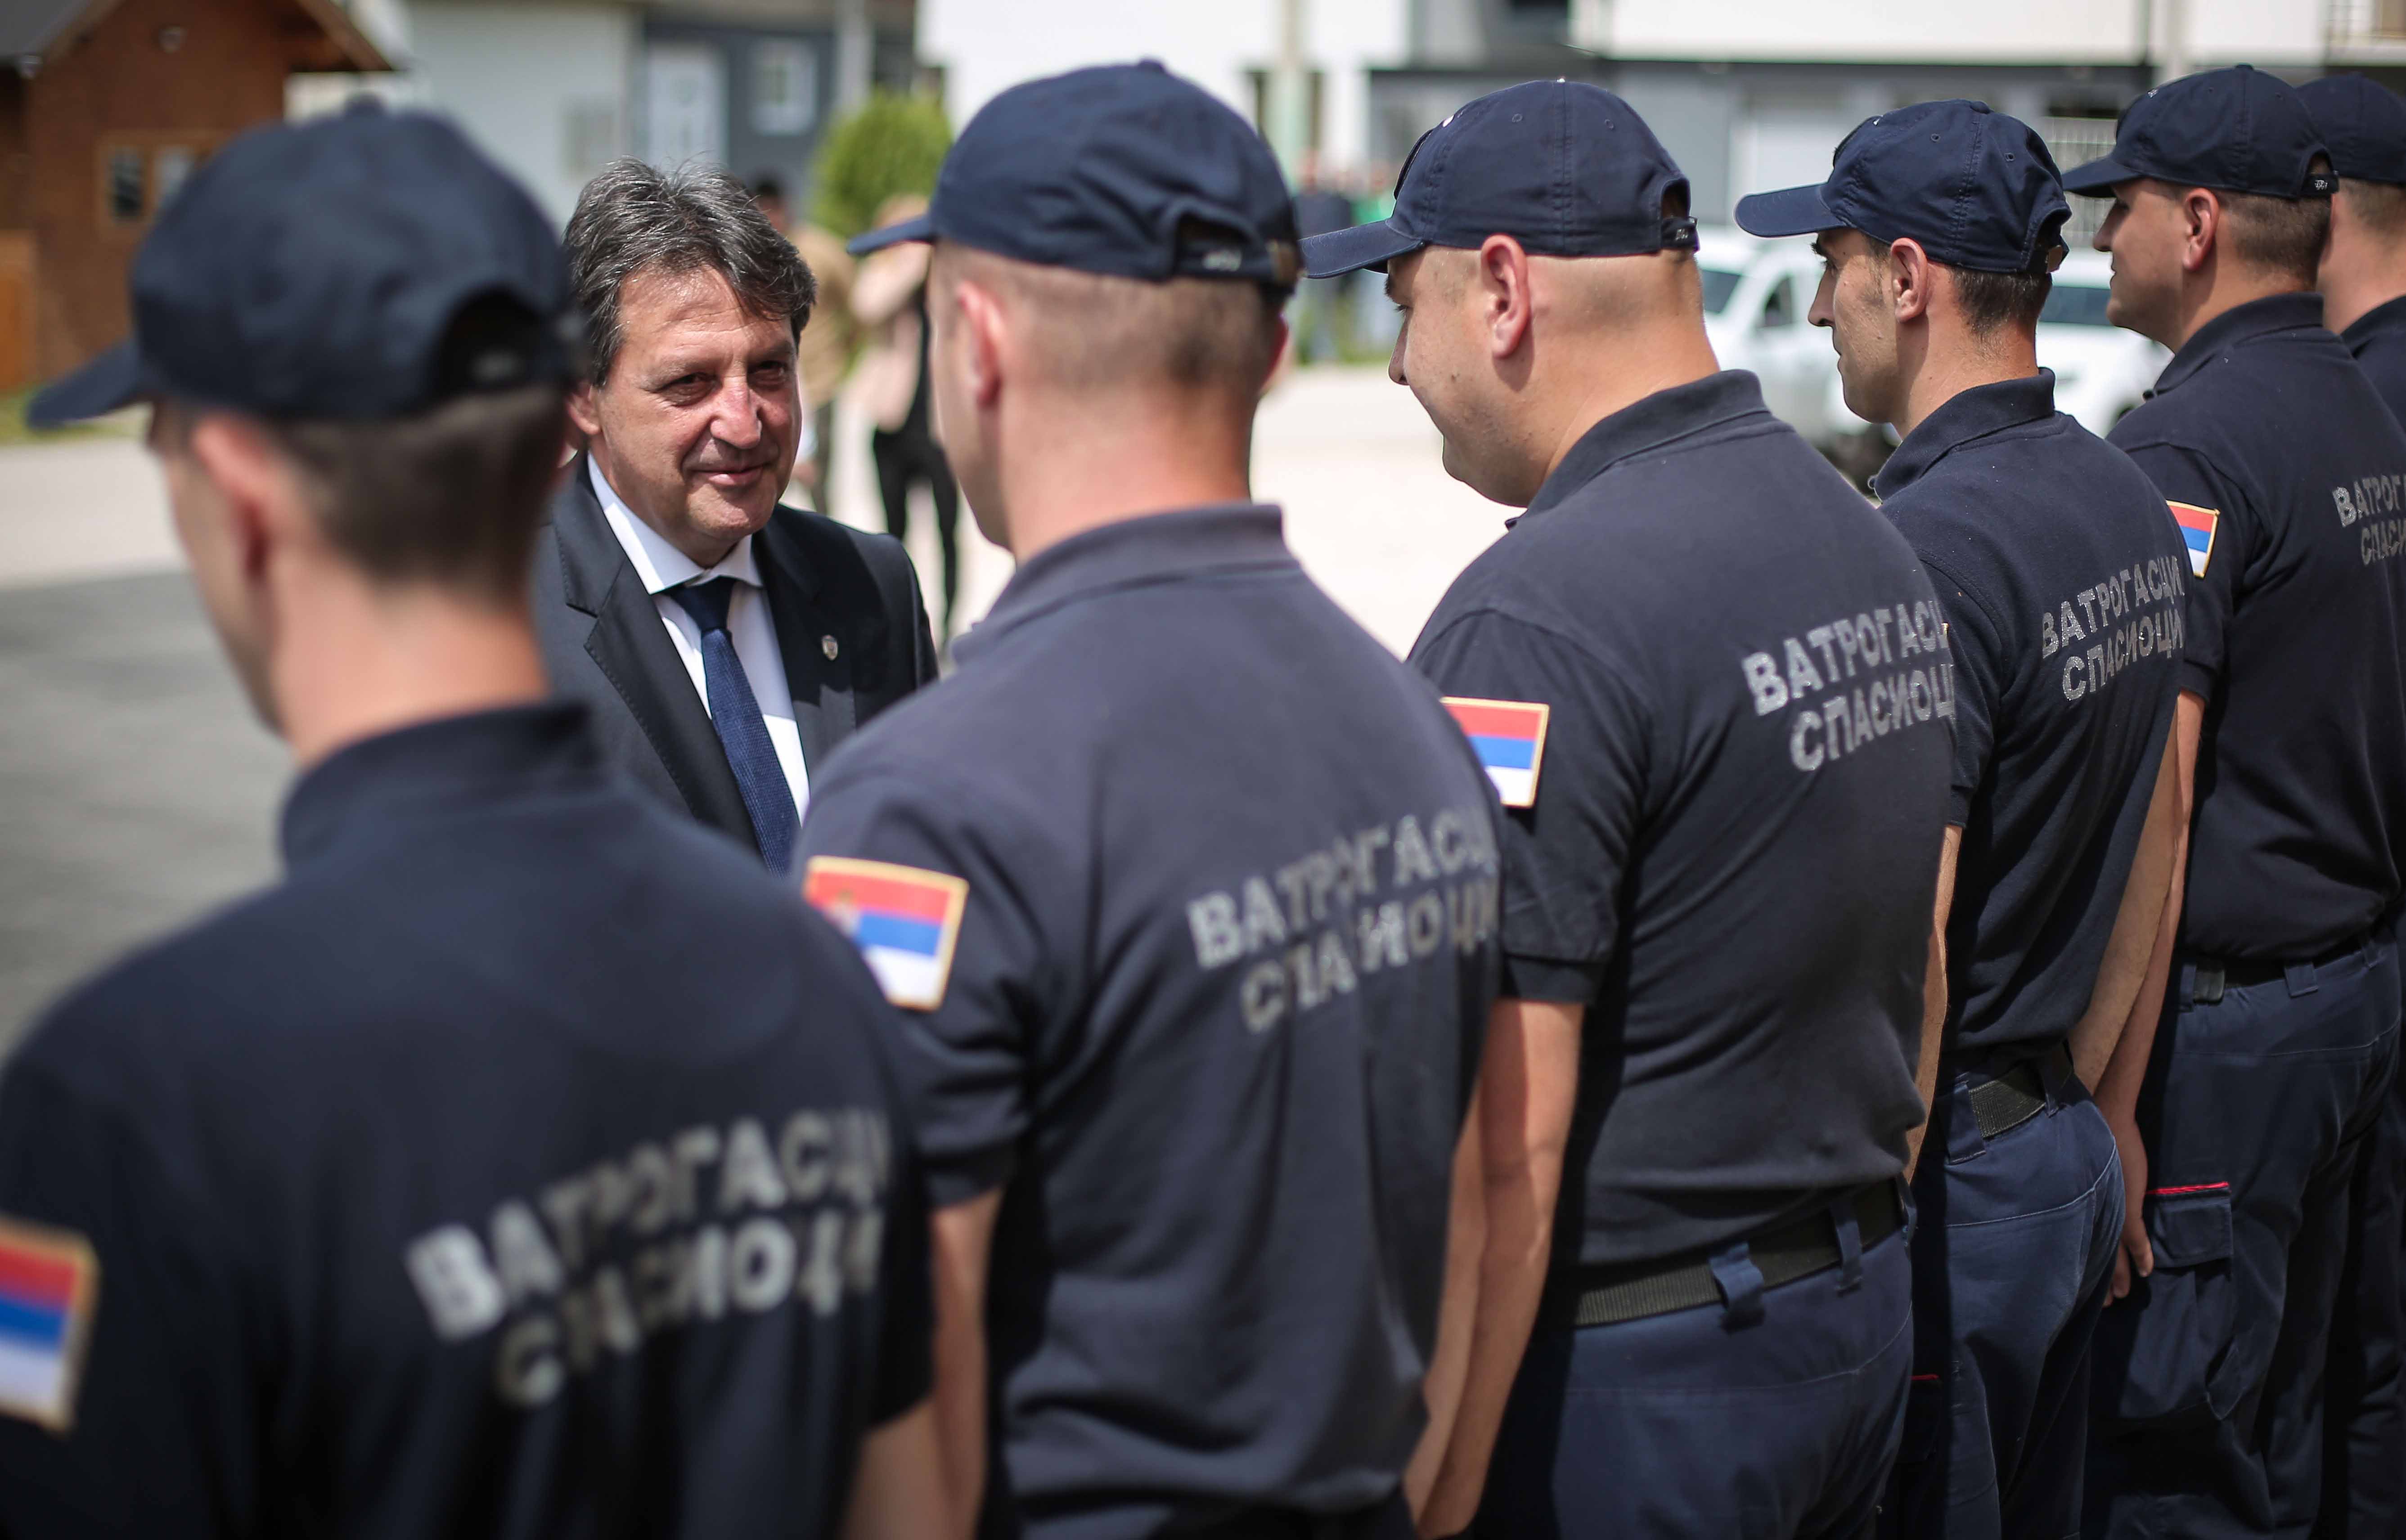 Министар унутрашњих послова Братислав Гашић отворио у Бродареву новоизграђени објекат Ватрогасно-спасилачког одељења